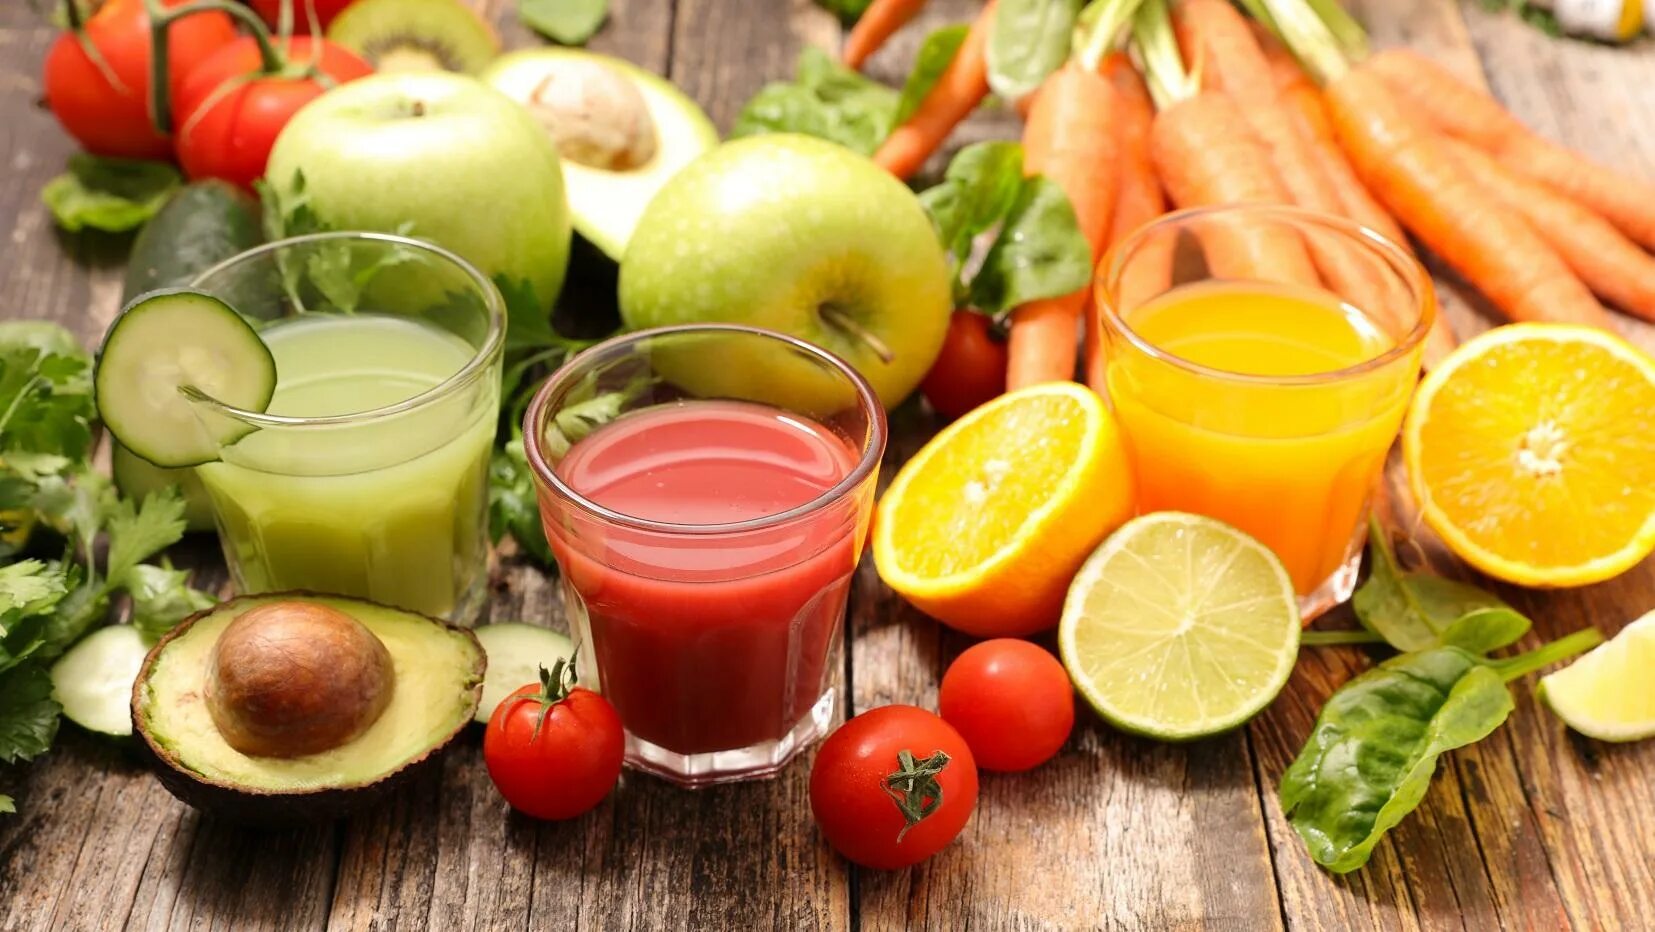 Свежевыжатый сок в холодильнике. Соки из овощей и фруктов. Фруктовый сок. Свежевыжатый овощной сок. Плодово овощные соки.